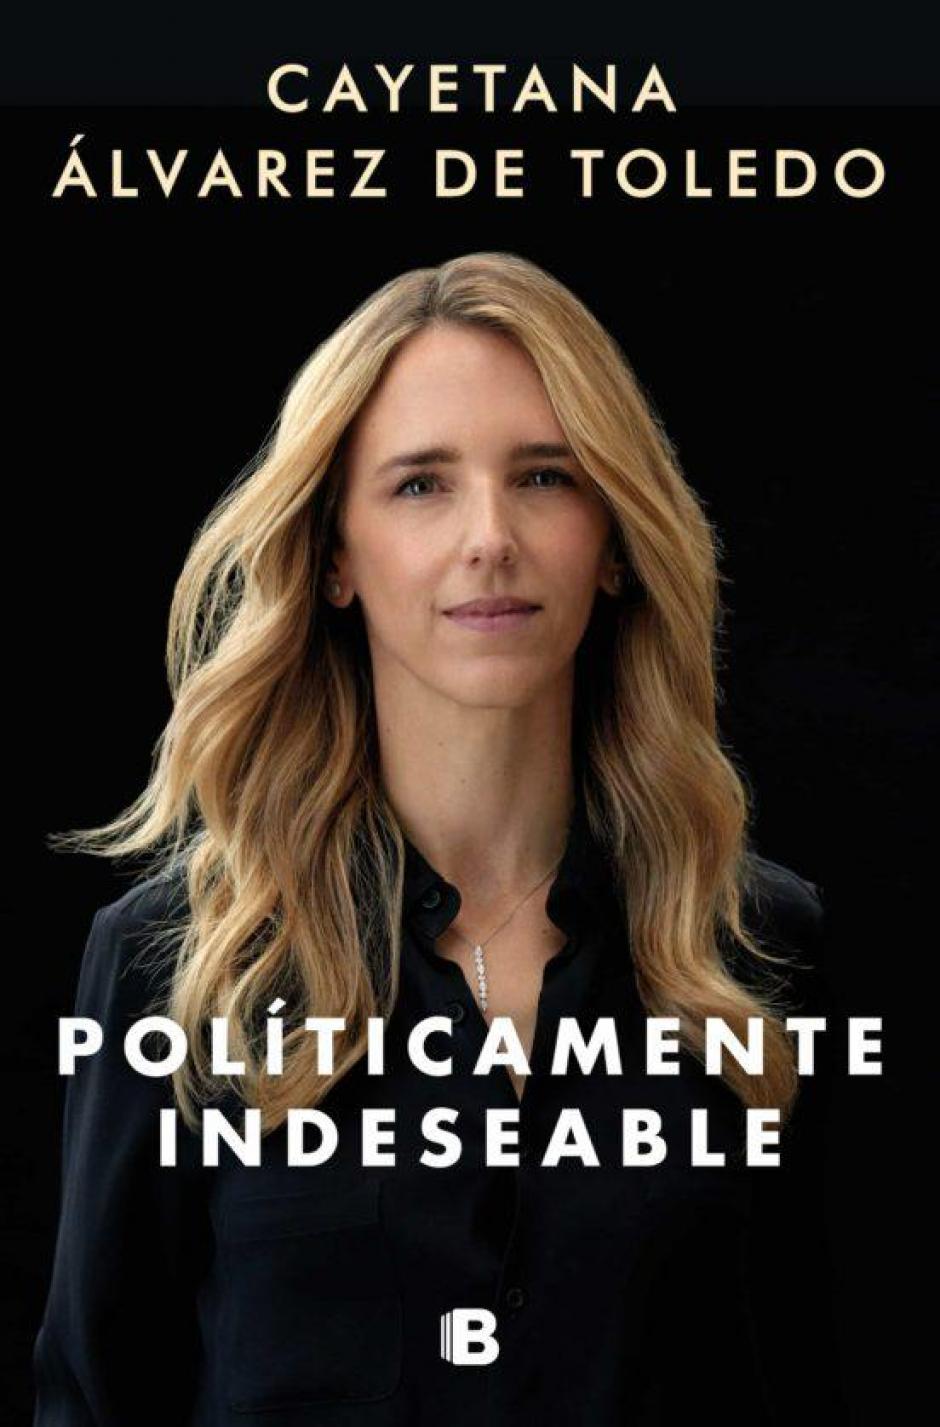 Portada de 'Políticamente indeseable', el libro de Cayetana Álvarez de Toledo